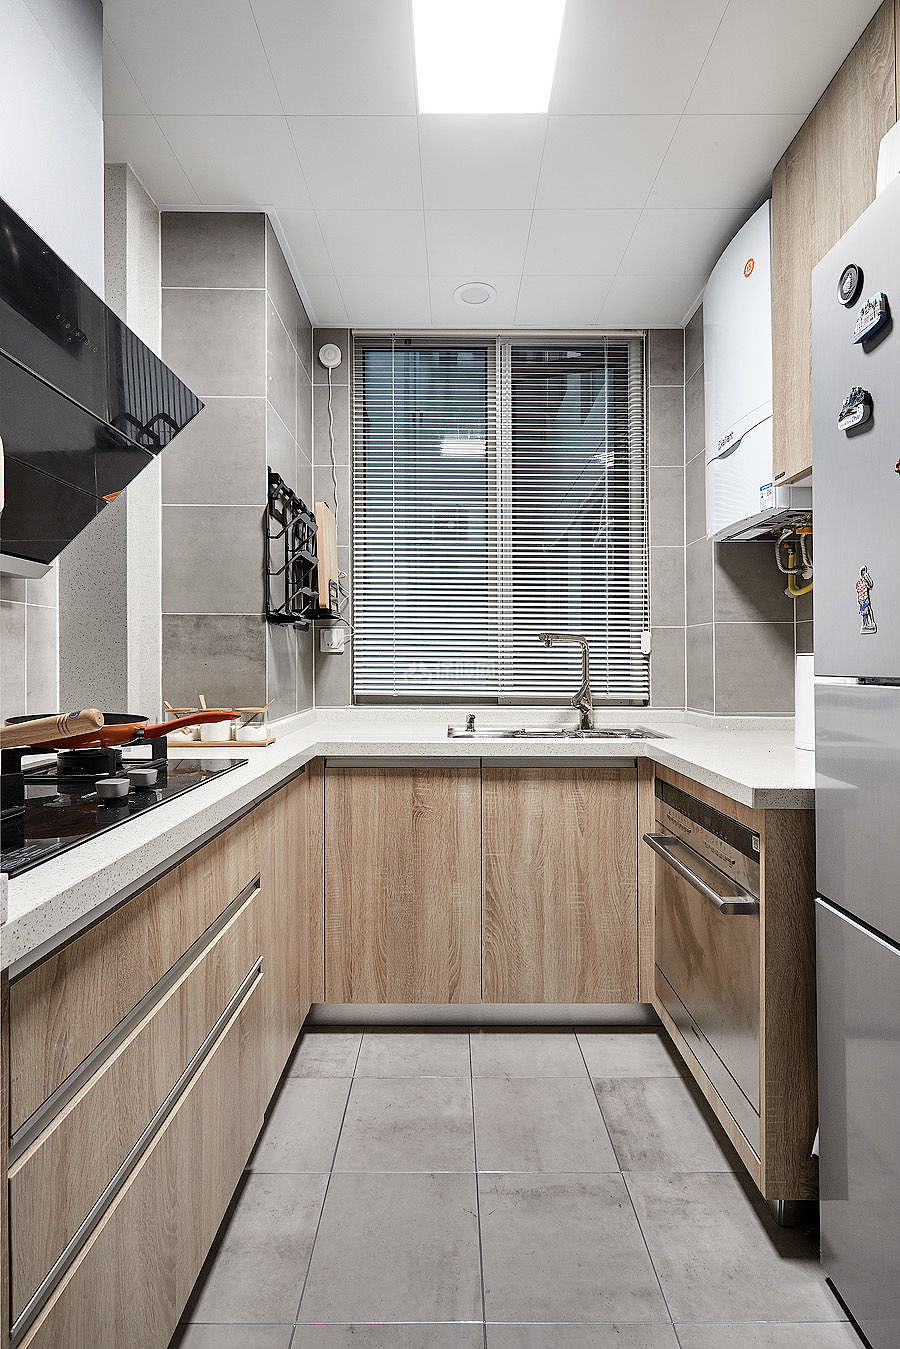 89㎡清新北欧两居之厨房装潢设计效果图